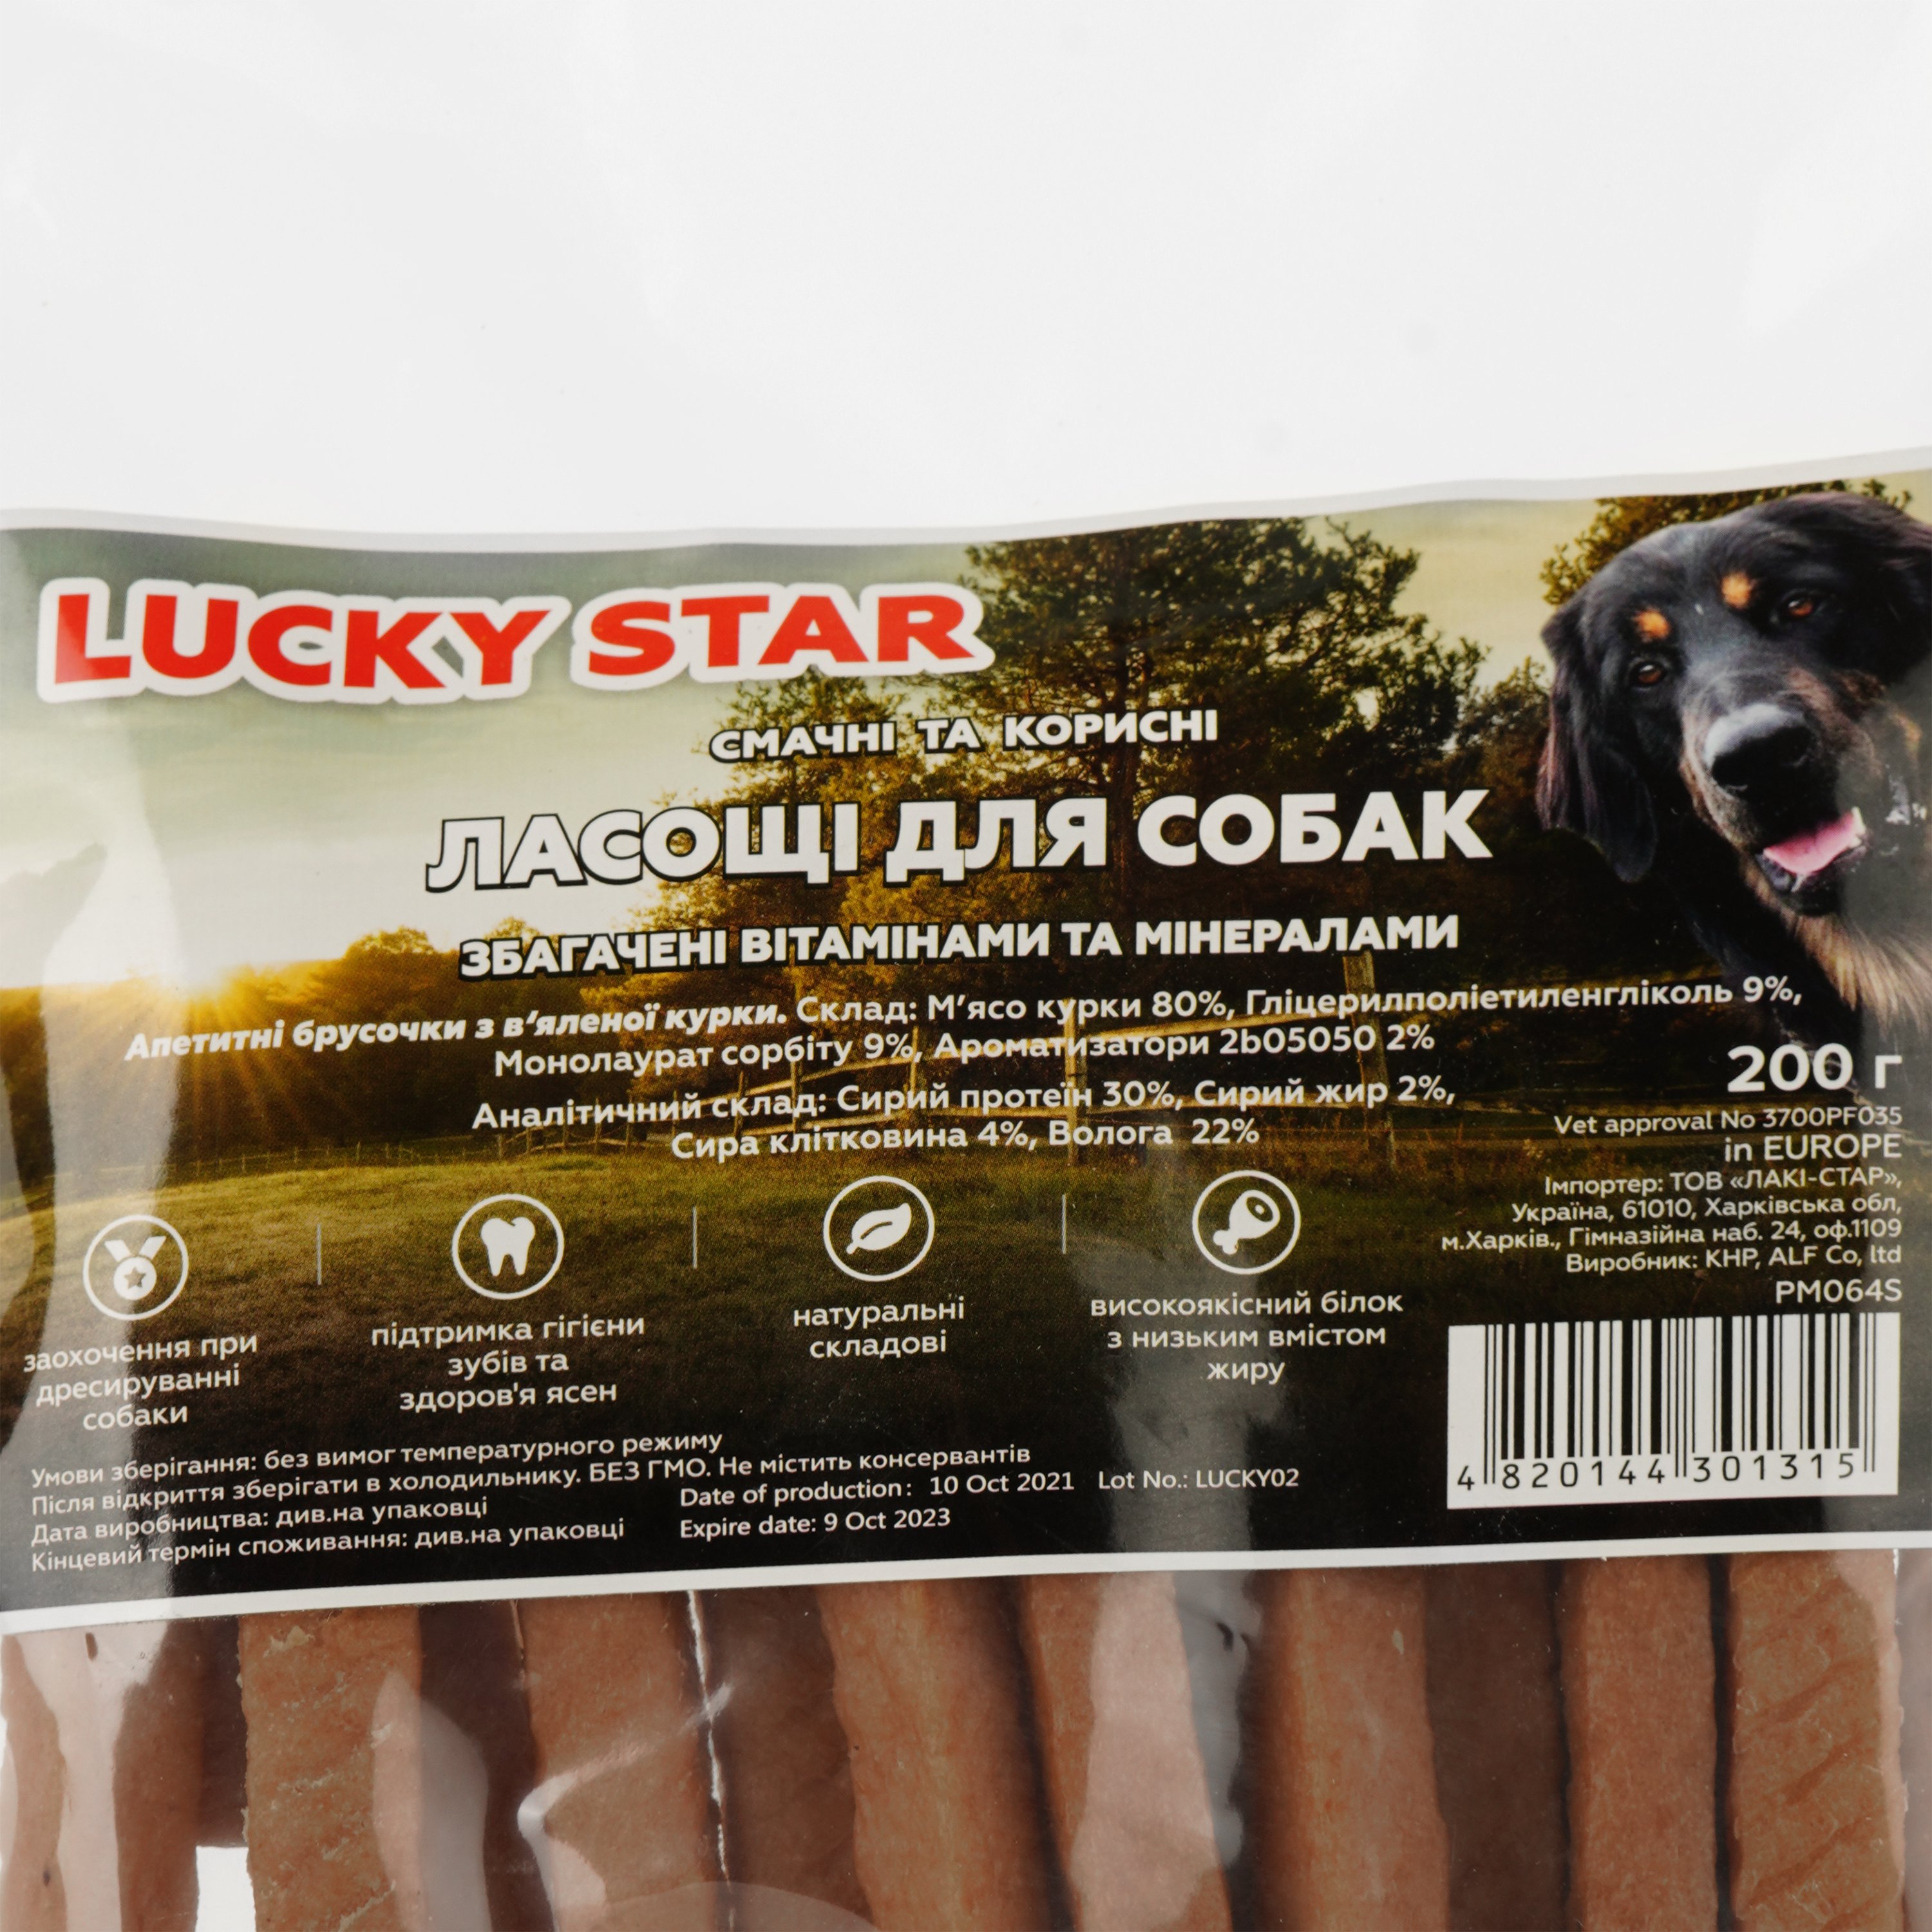 Ласощі для собак Lucky star Апетитні брусочки з м'яса курки, 10 см, 200 г (PM064S) - фото 4